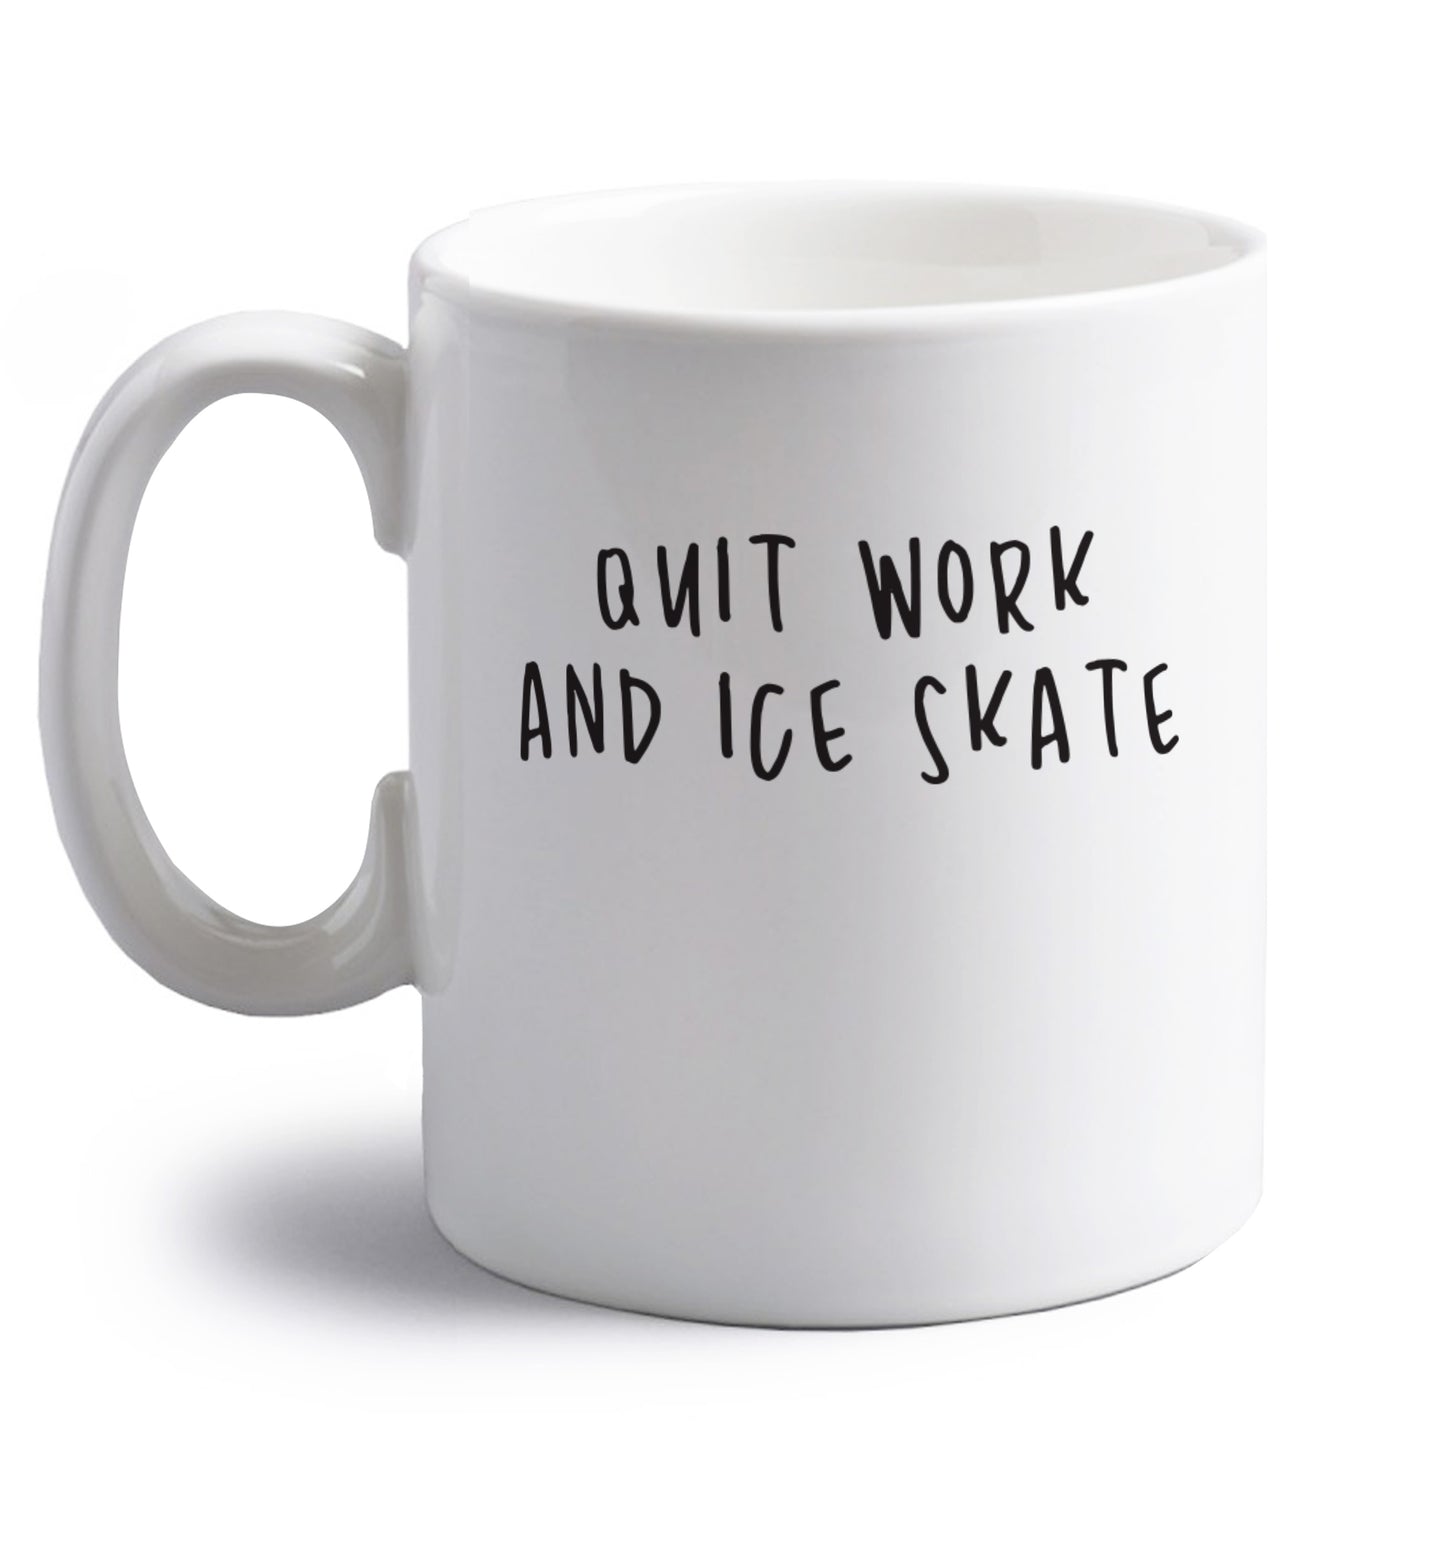 Quit work ice skate right handed white ceramic mug 